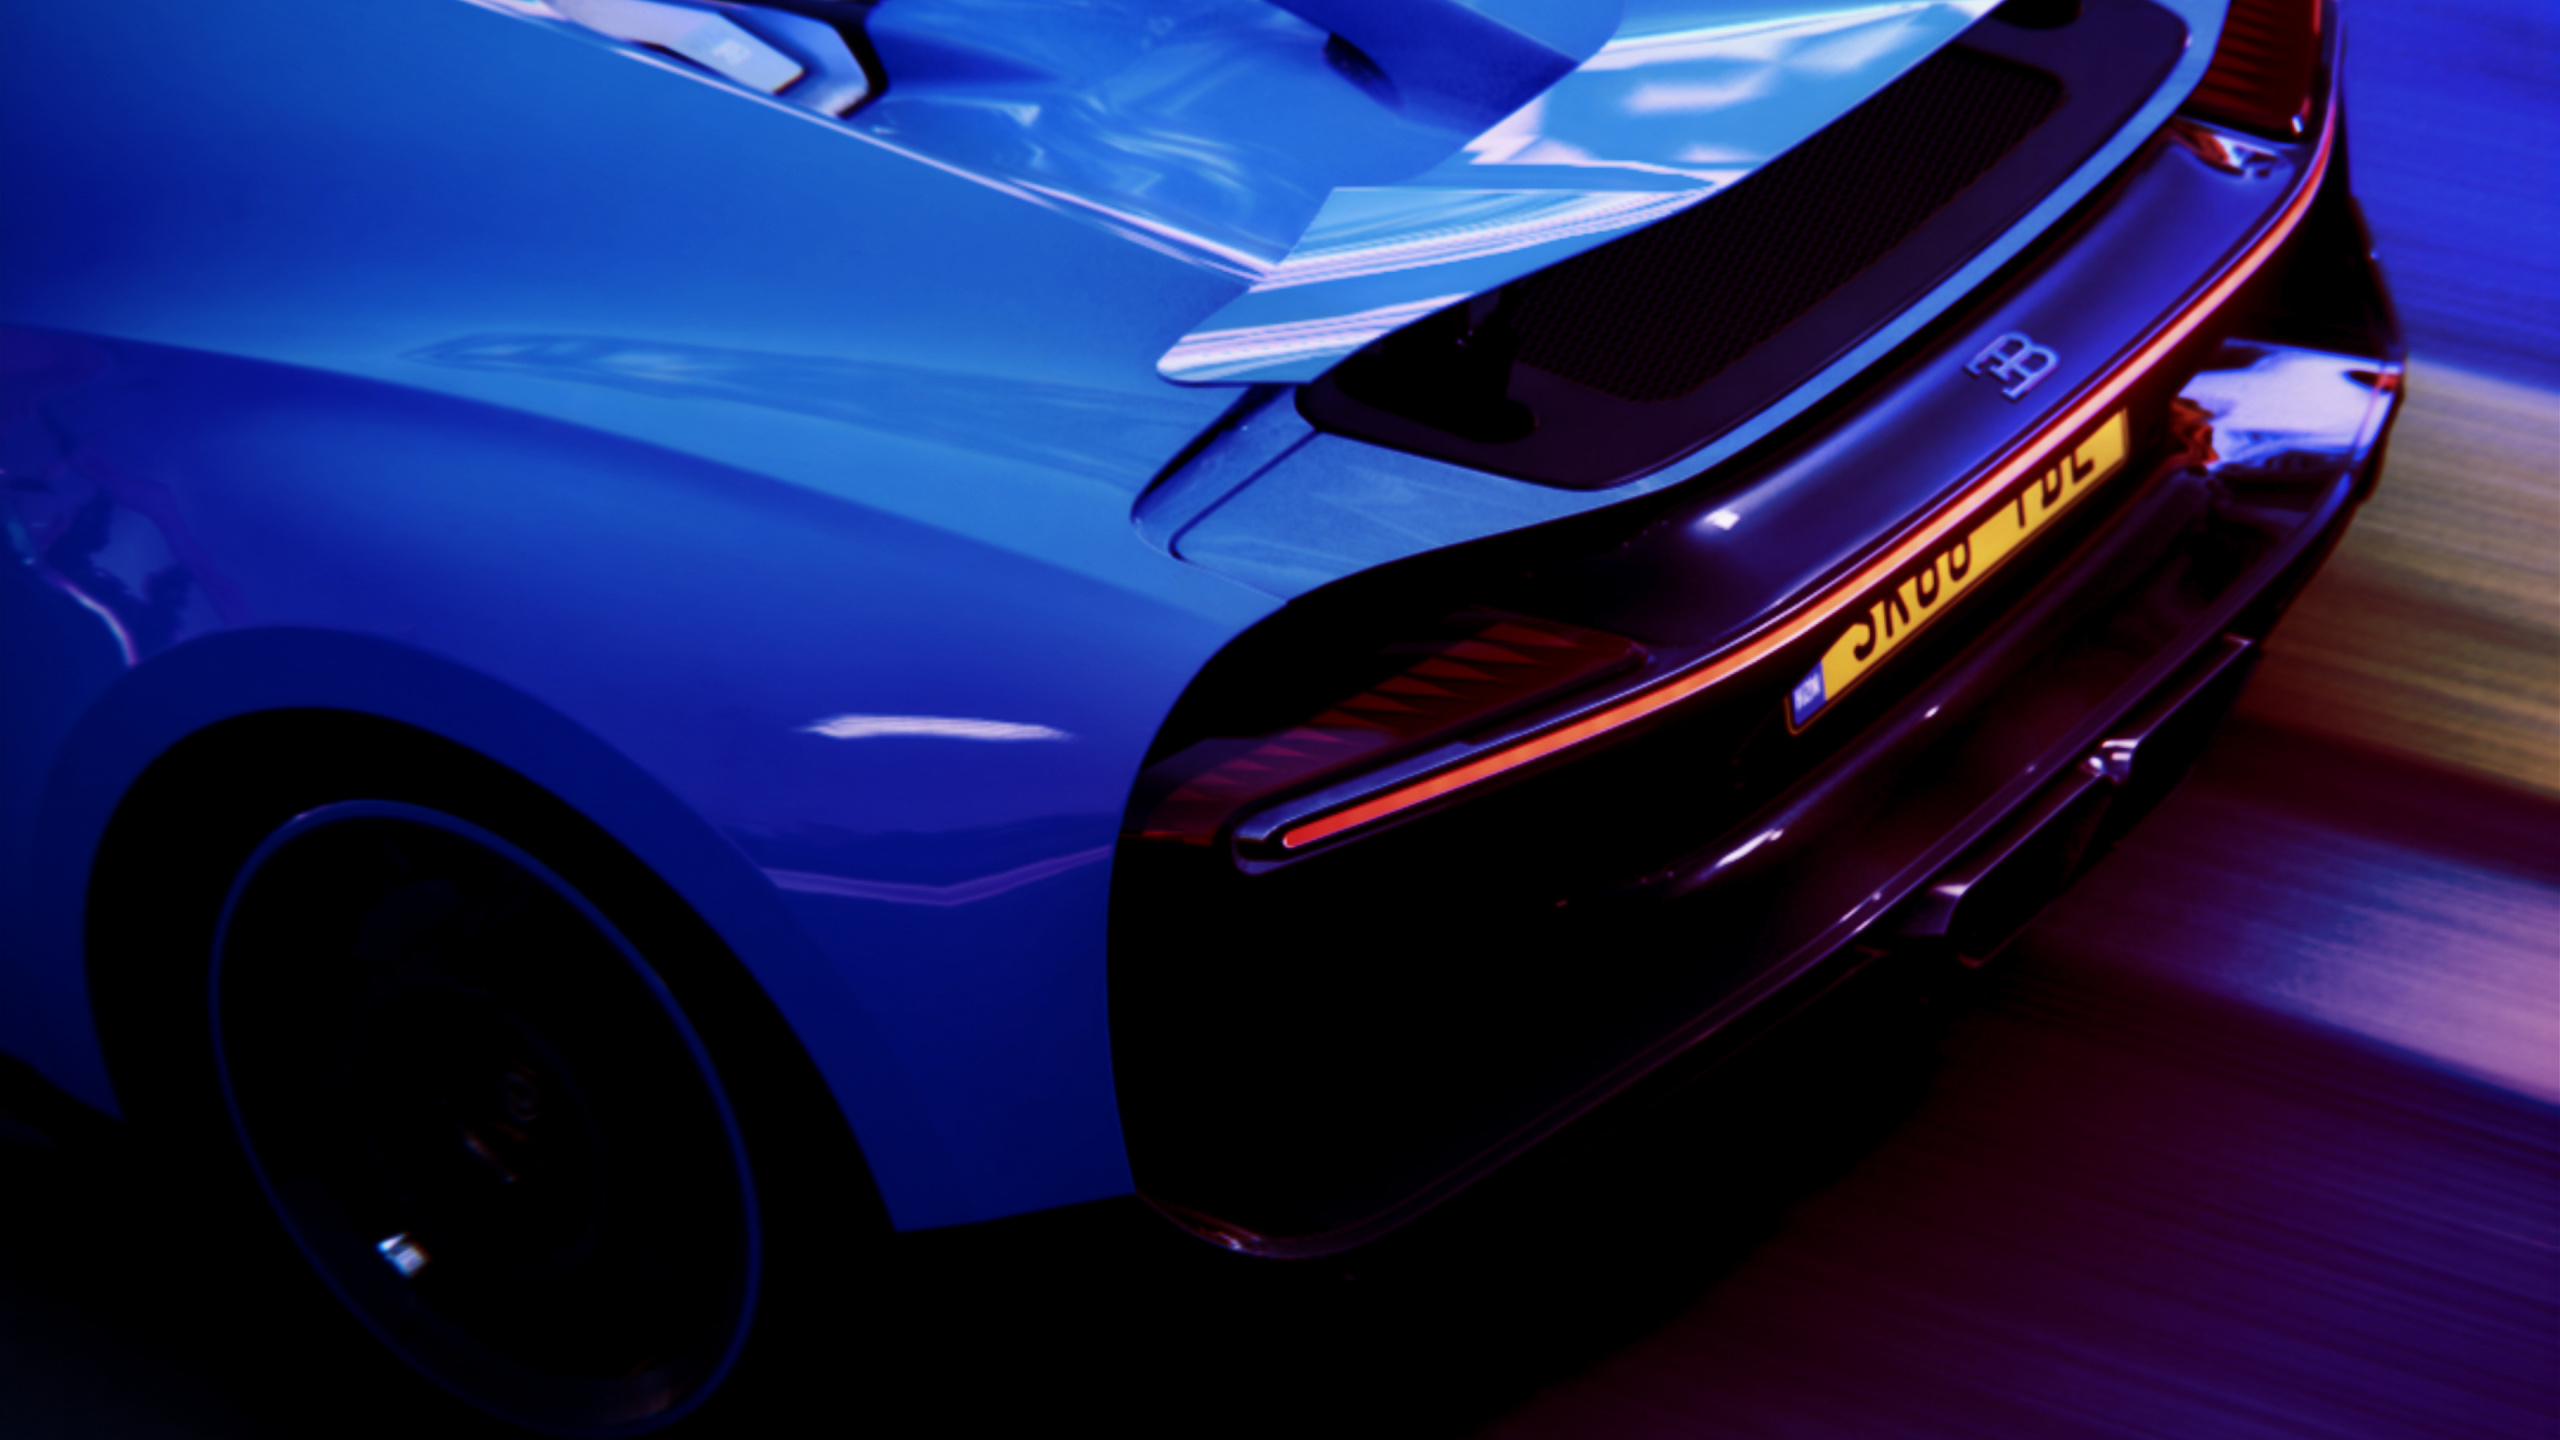 兰博基尼, 超级跑车, 布加迪, 电蓝色的, 汽车外 壁纸 2560x1440 允许